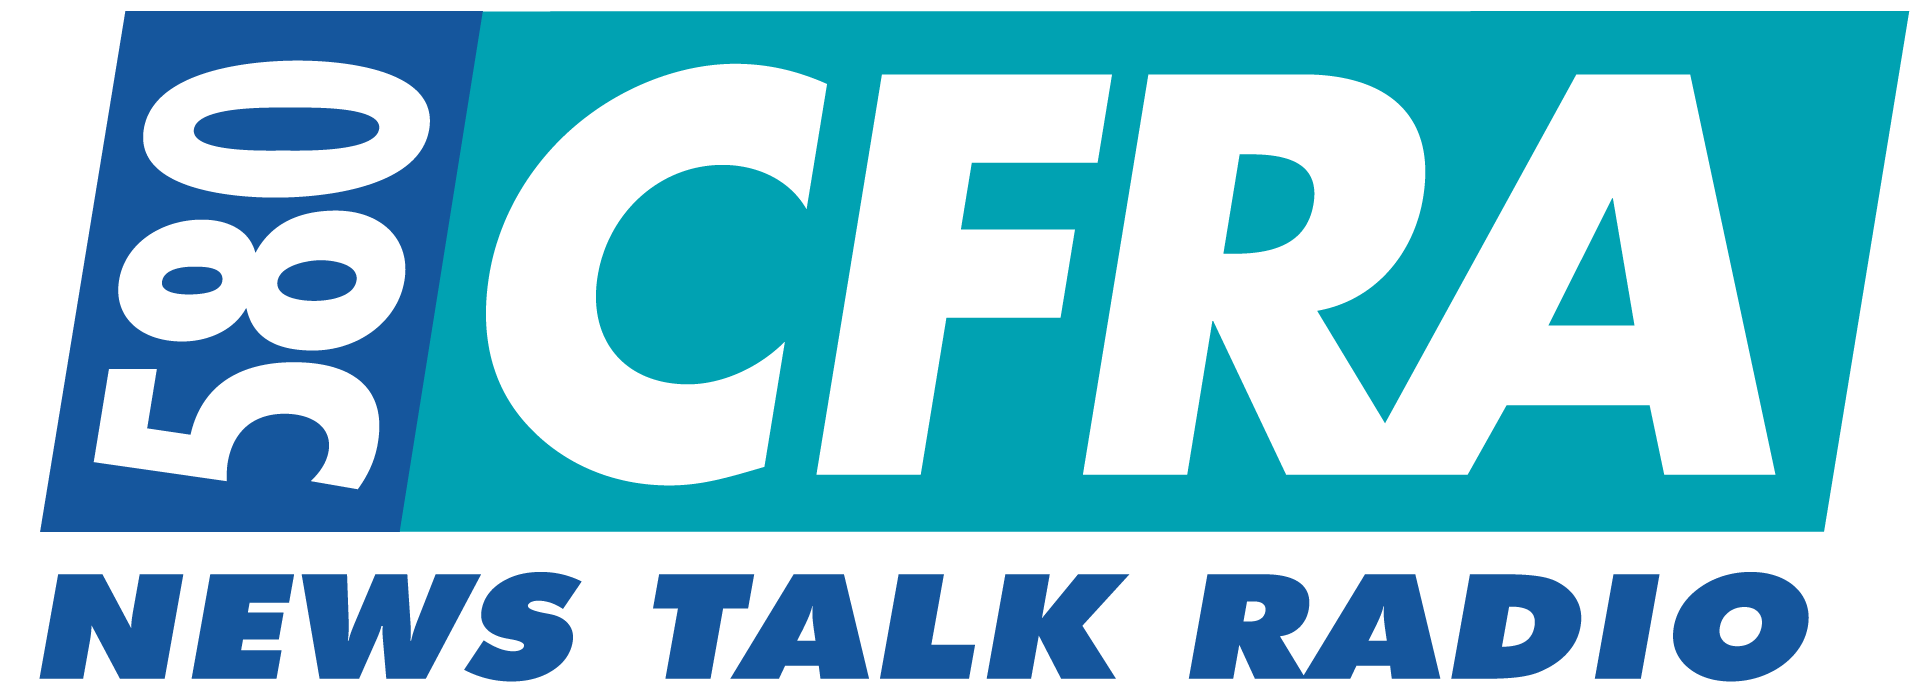 580 CRFA Ottawa's News Talk Radio Logo